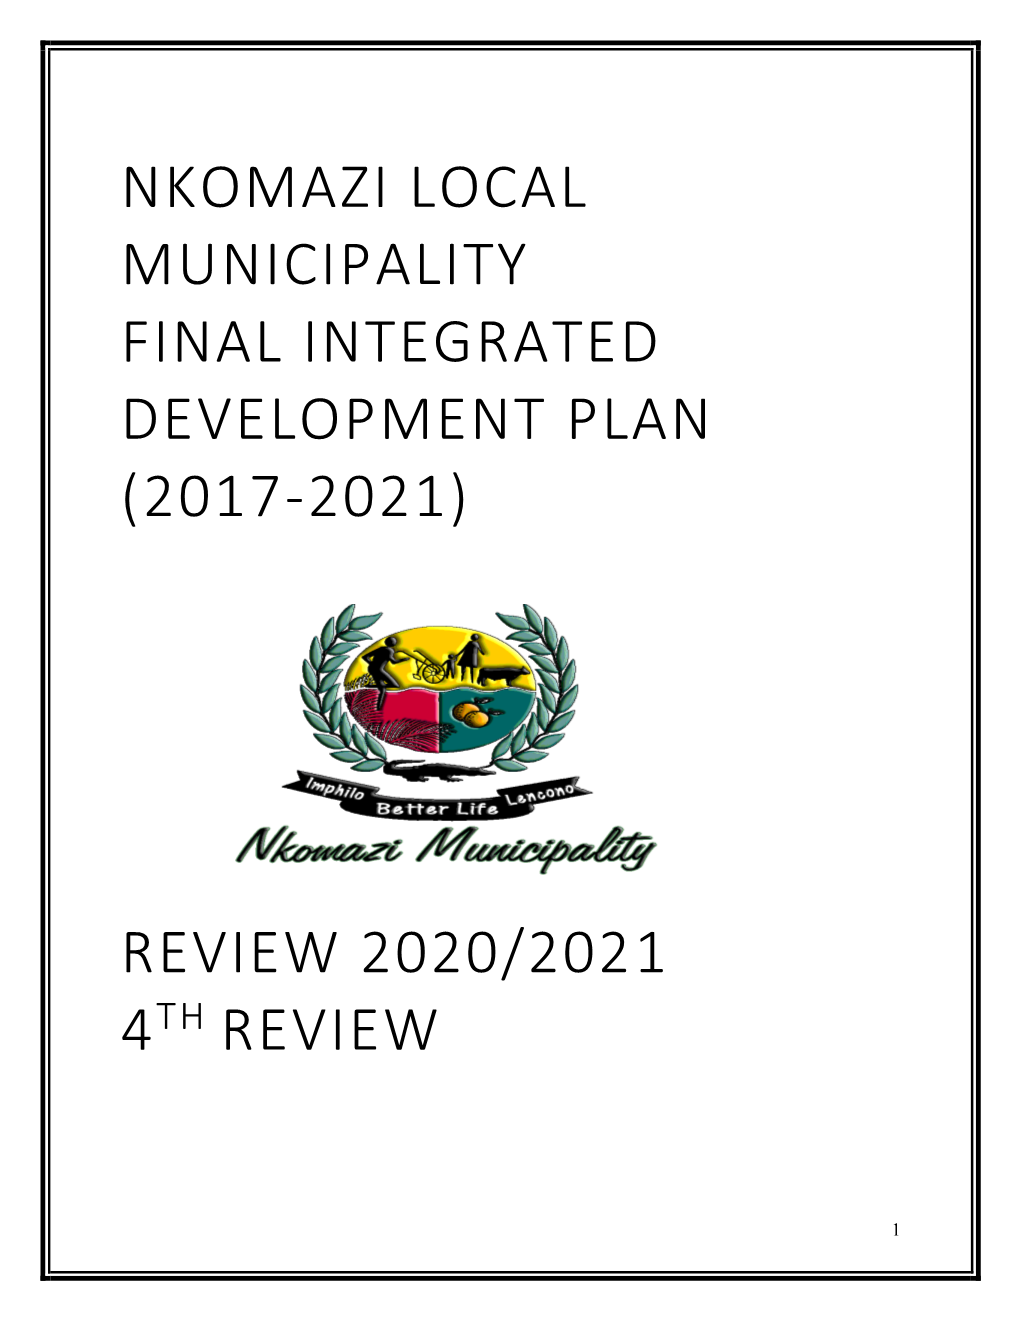 Nkomazi Local Municipality Final Integrated Development Plan (2017-2021)